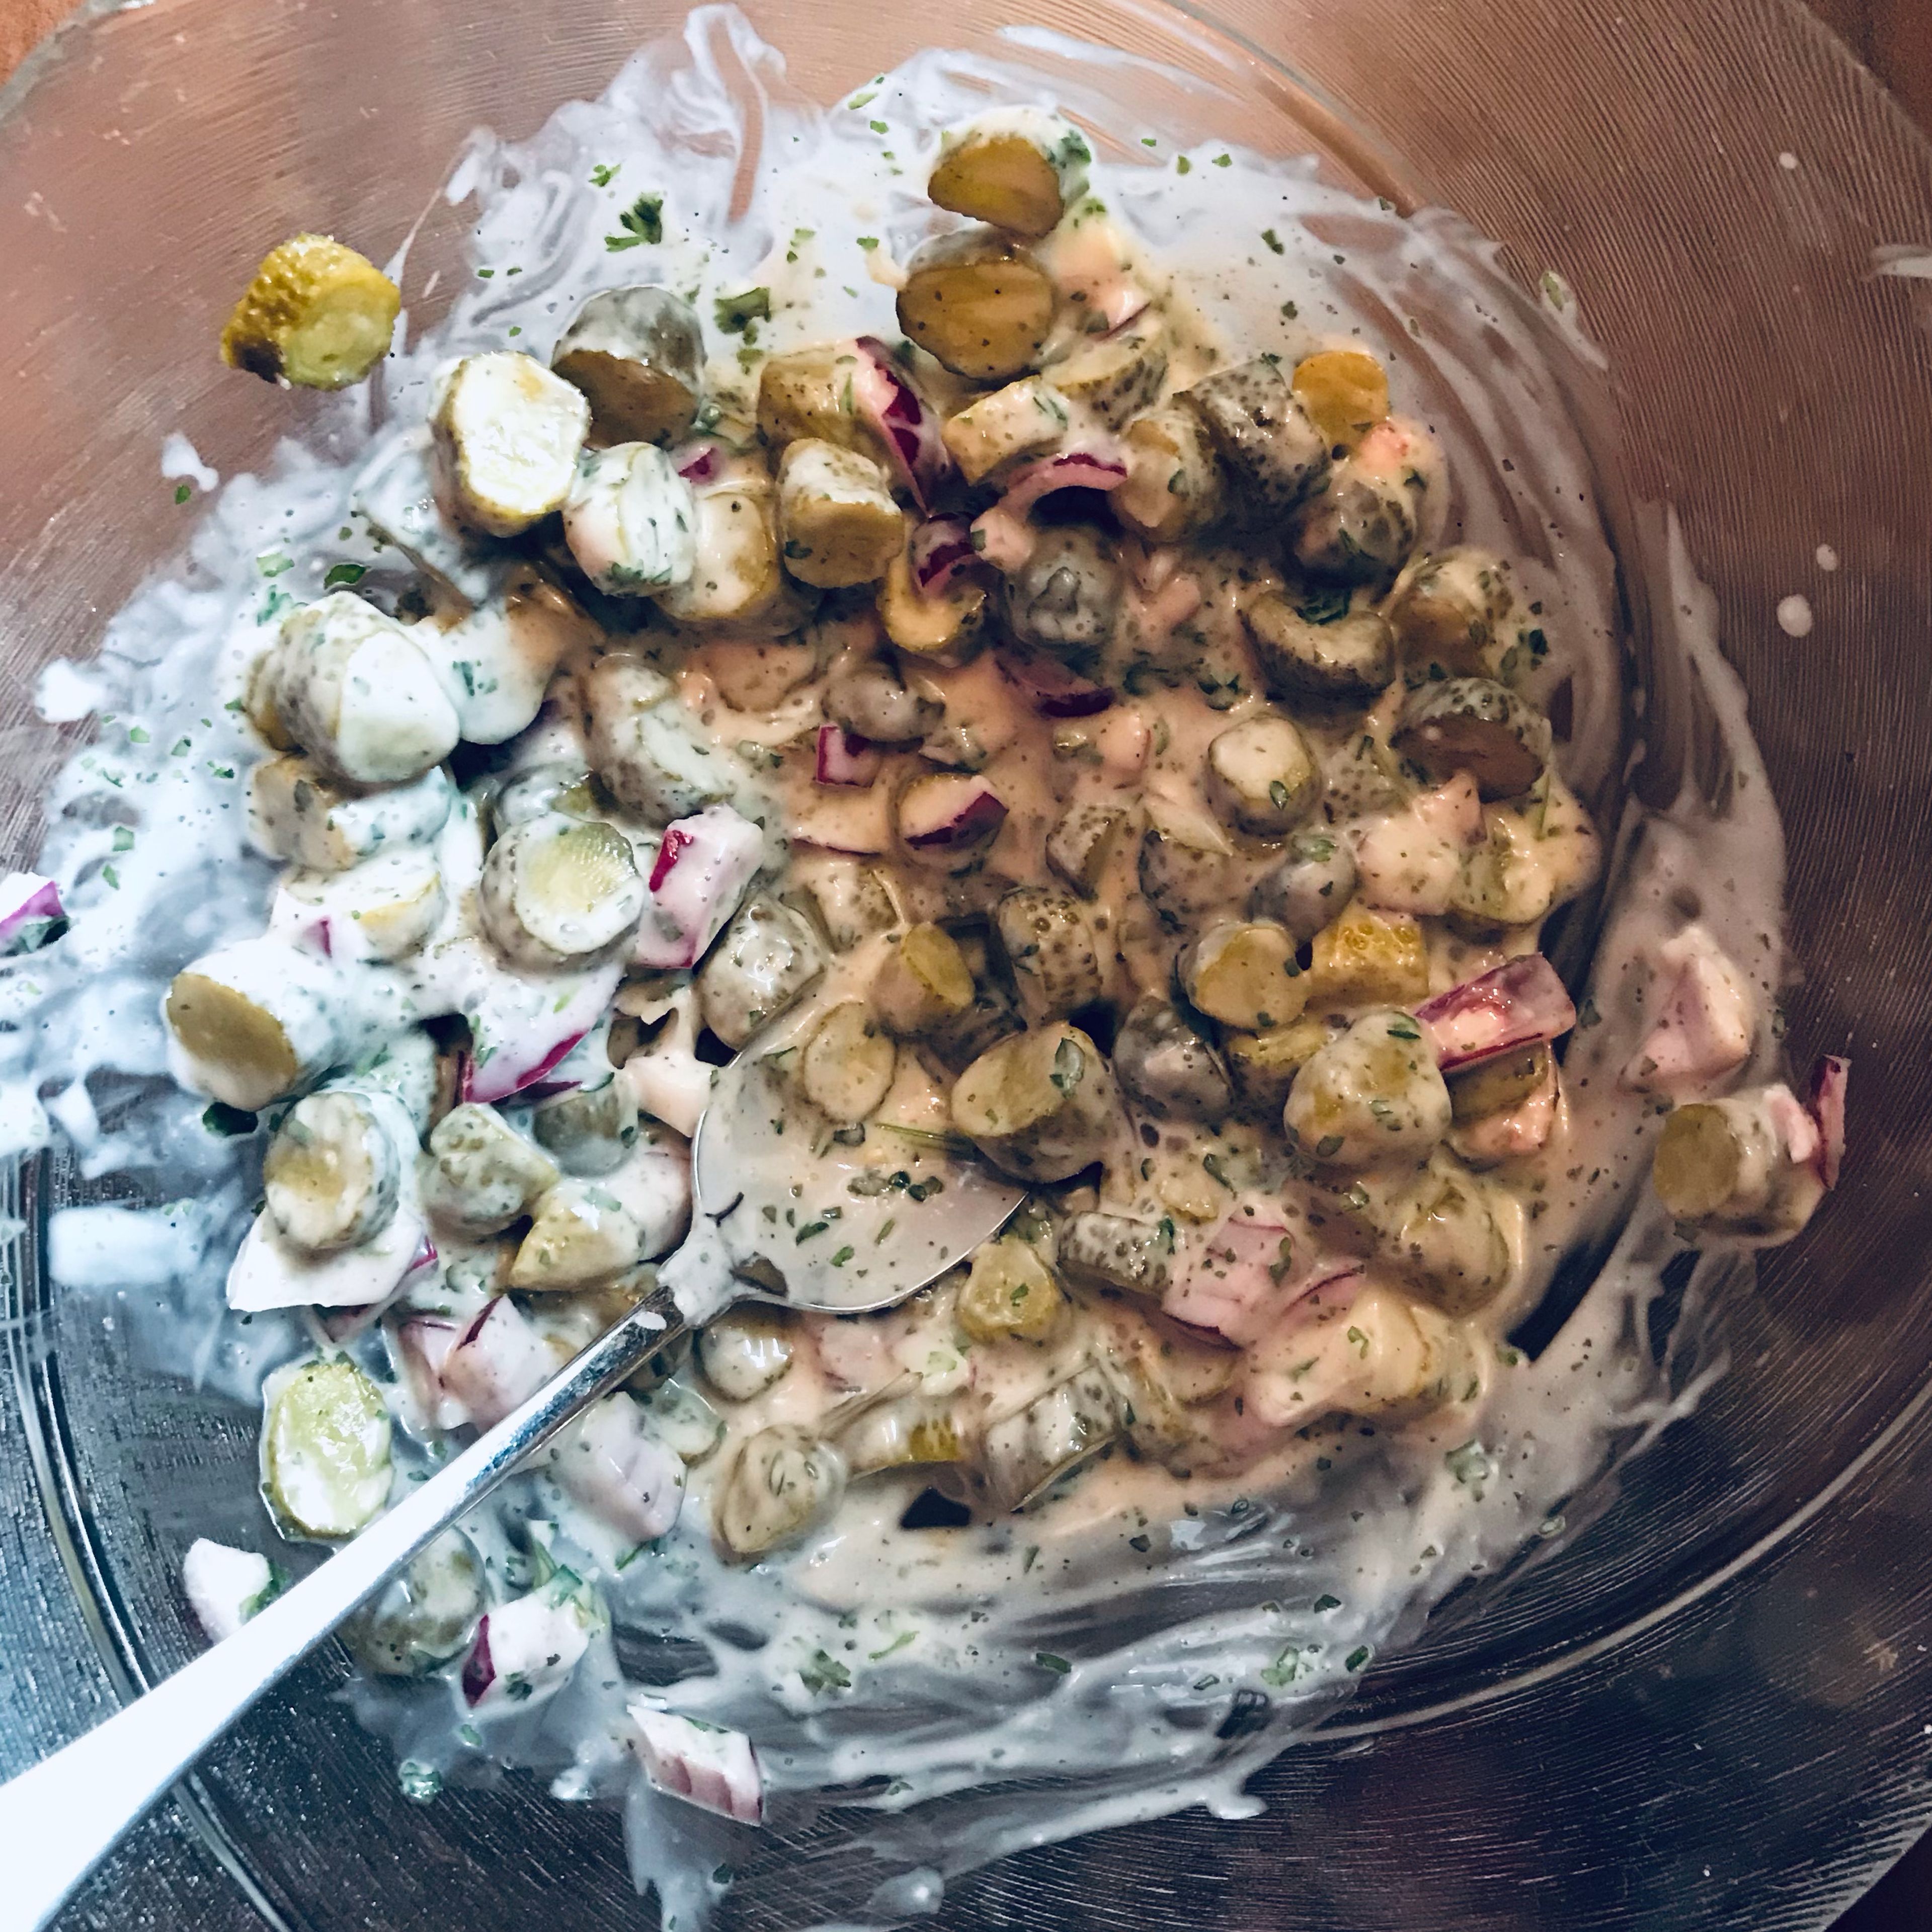 Inzwischen kann die Salatsoße vorbereitet werden. Die Zwiebel klein schneiden mit miracel whip vermengen. Die Kräuter und das Gurkenwasser zufügen. Auch die Gurken können schon reingeschnitten werden. Alles gut vermengen und mit Salz und Pfeffer würzen.